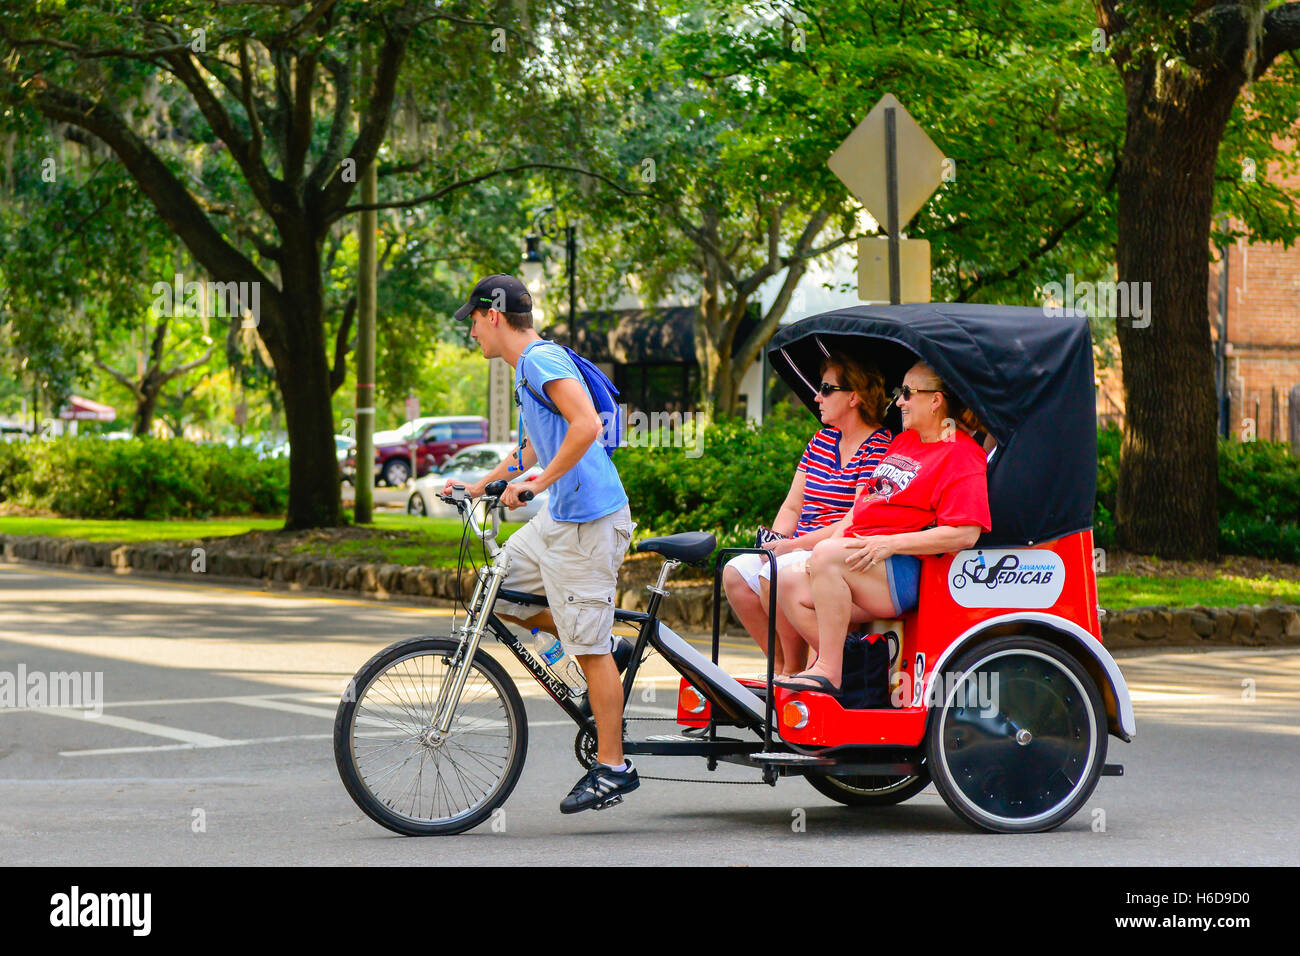 Sightseeing-Touristen genießen eine Pedicab-Fahrt durch den historischen Stadtteil Savannah, GA, USA Stockfoto